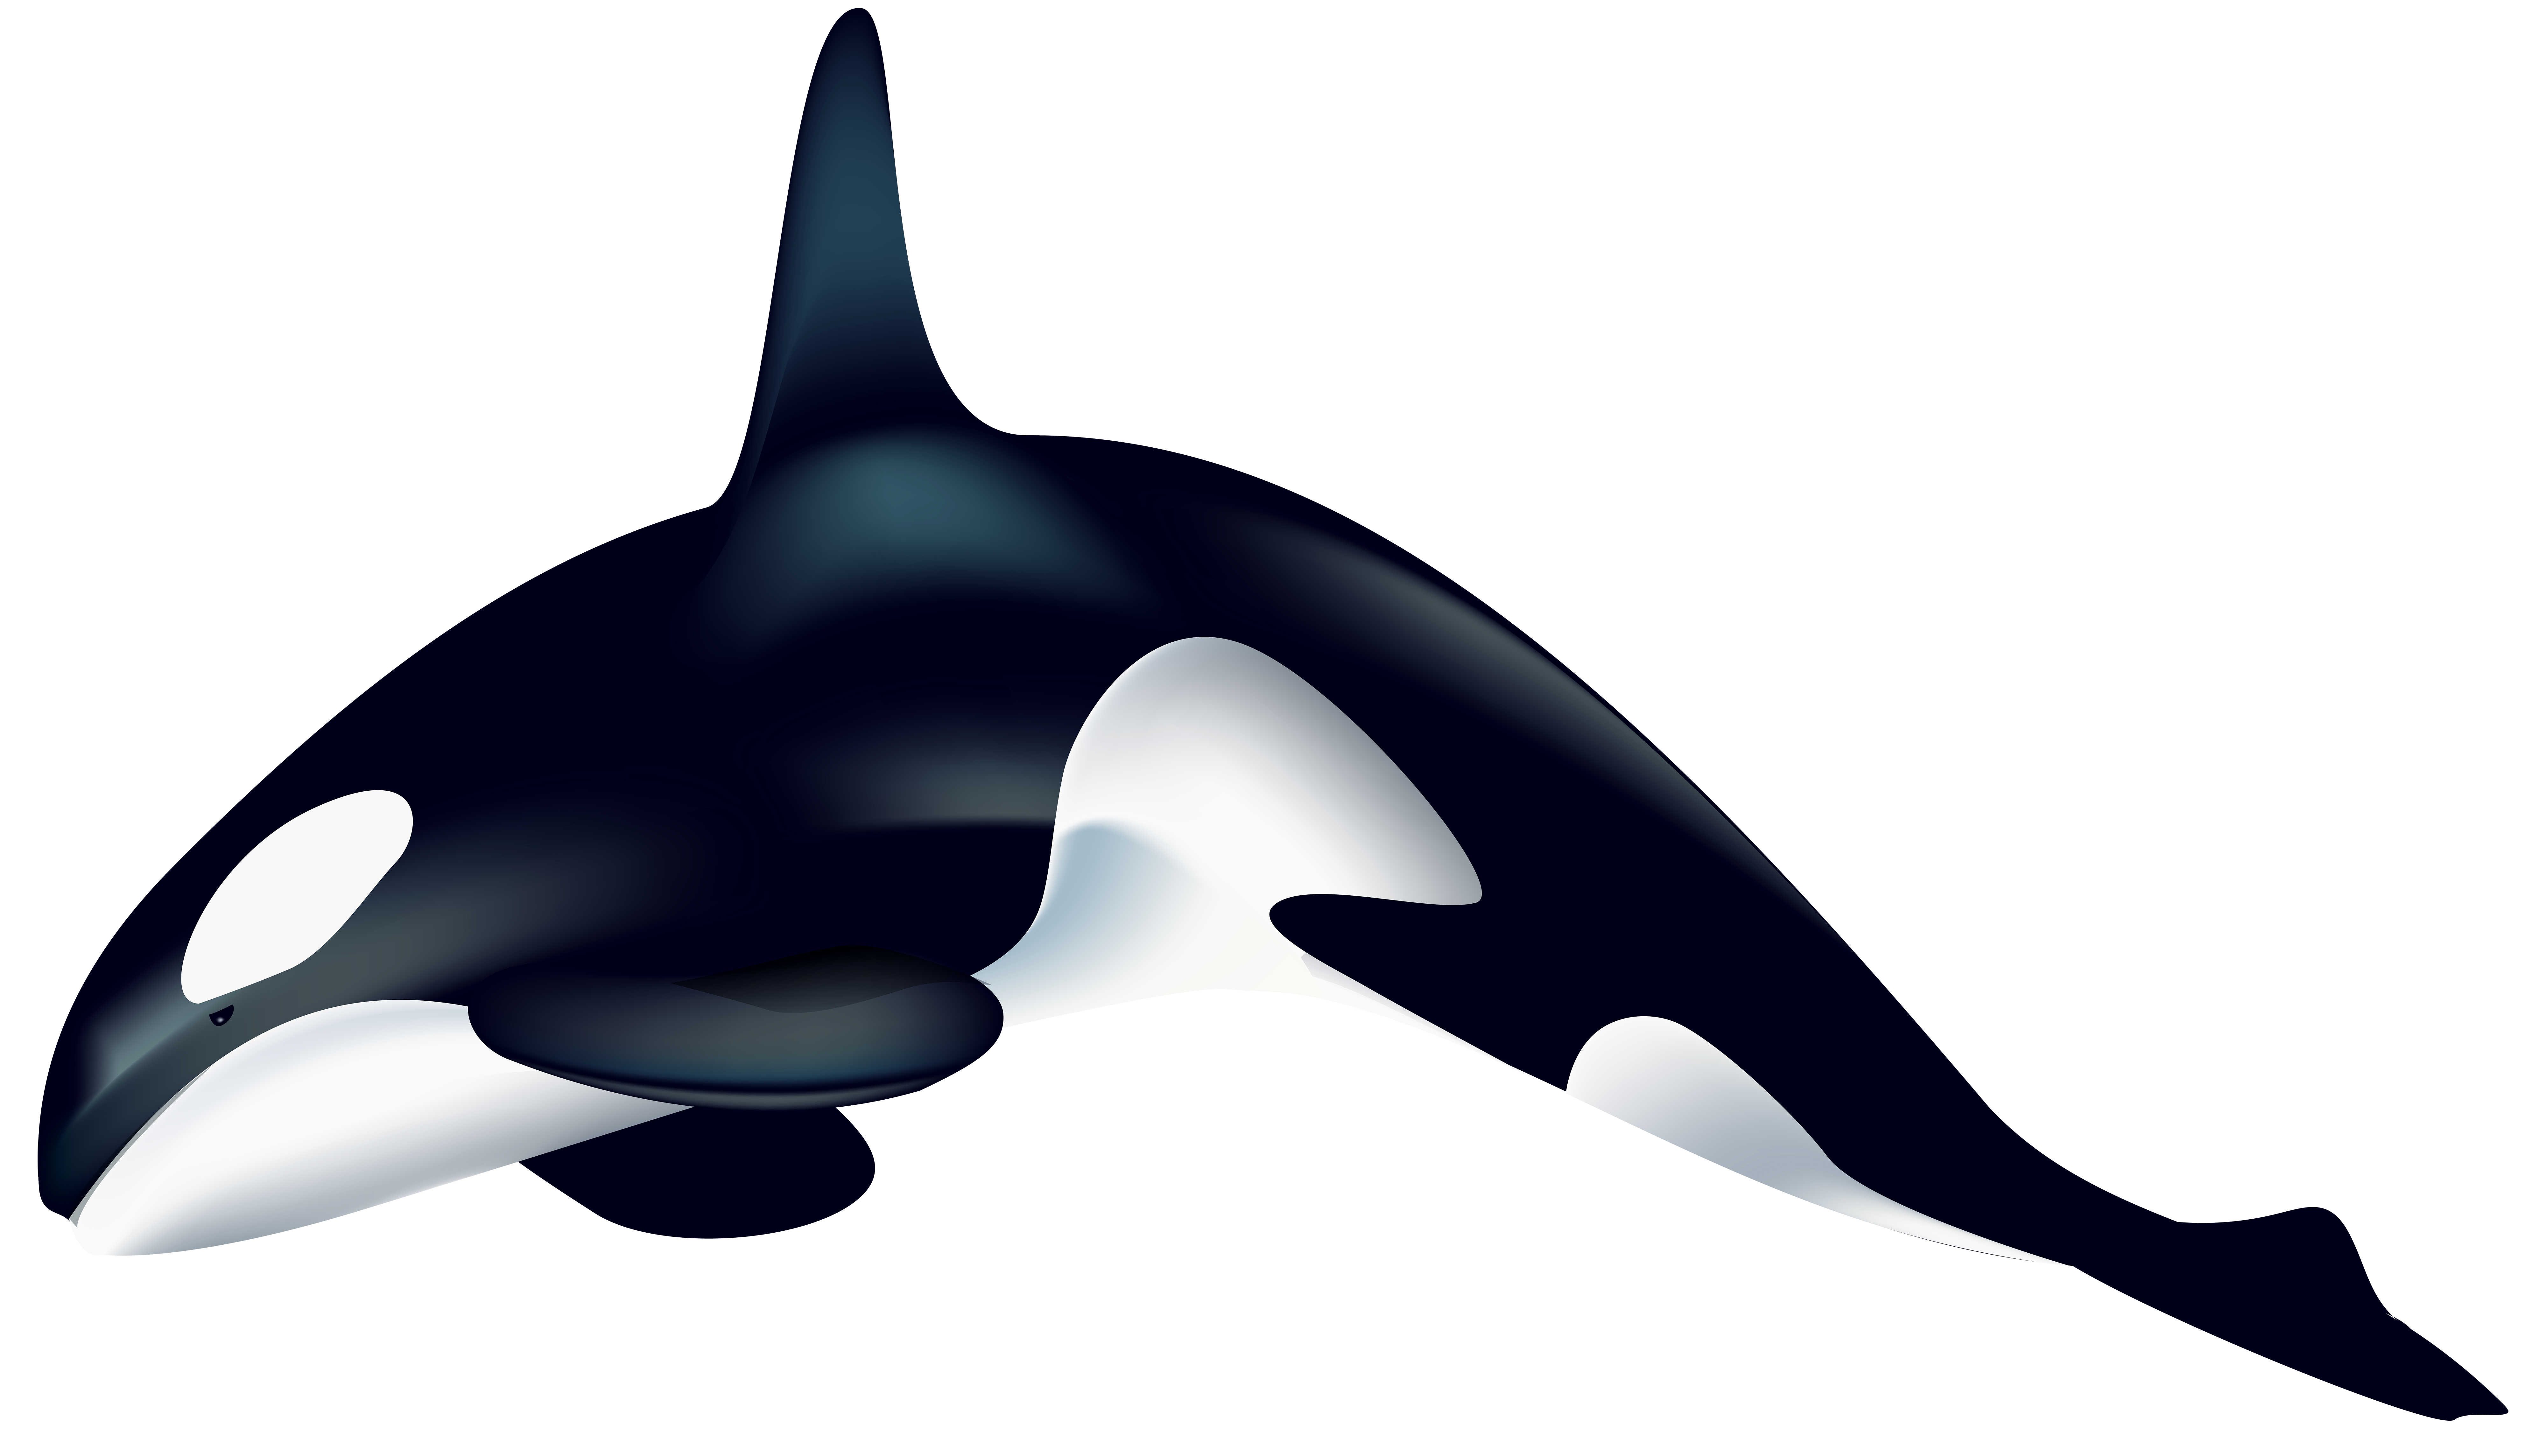 orca clipart